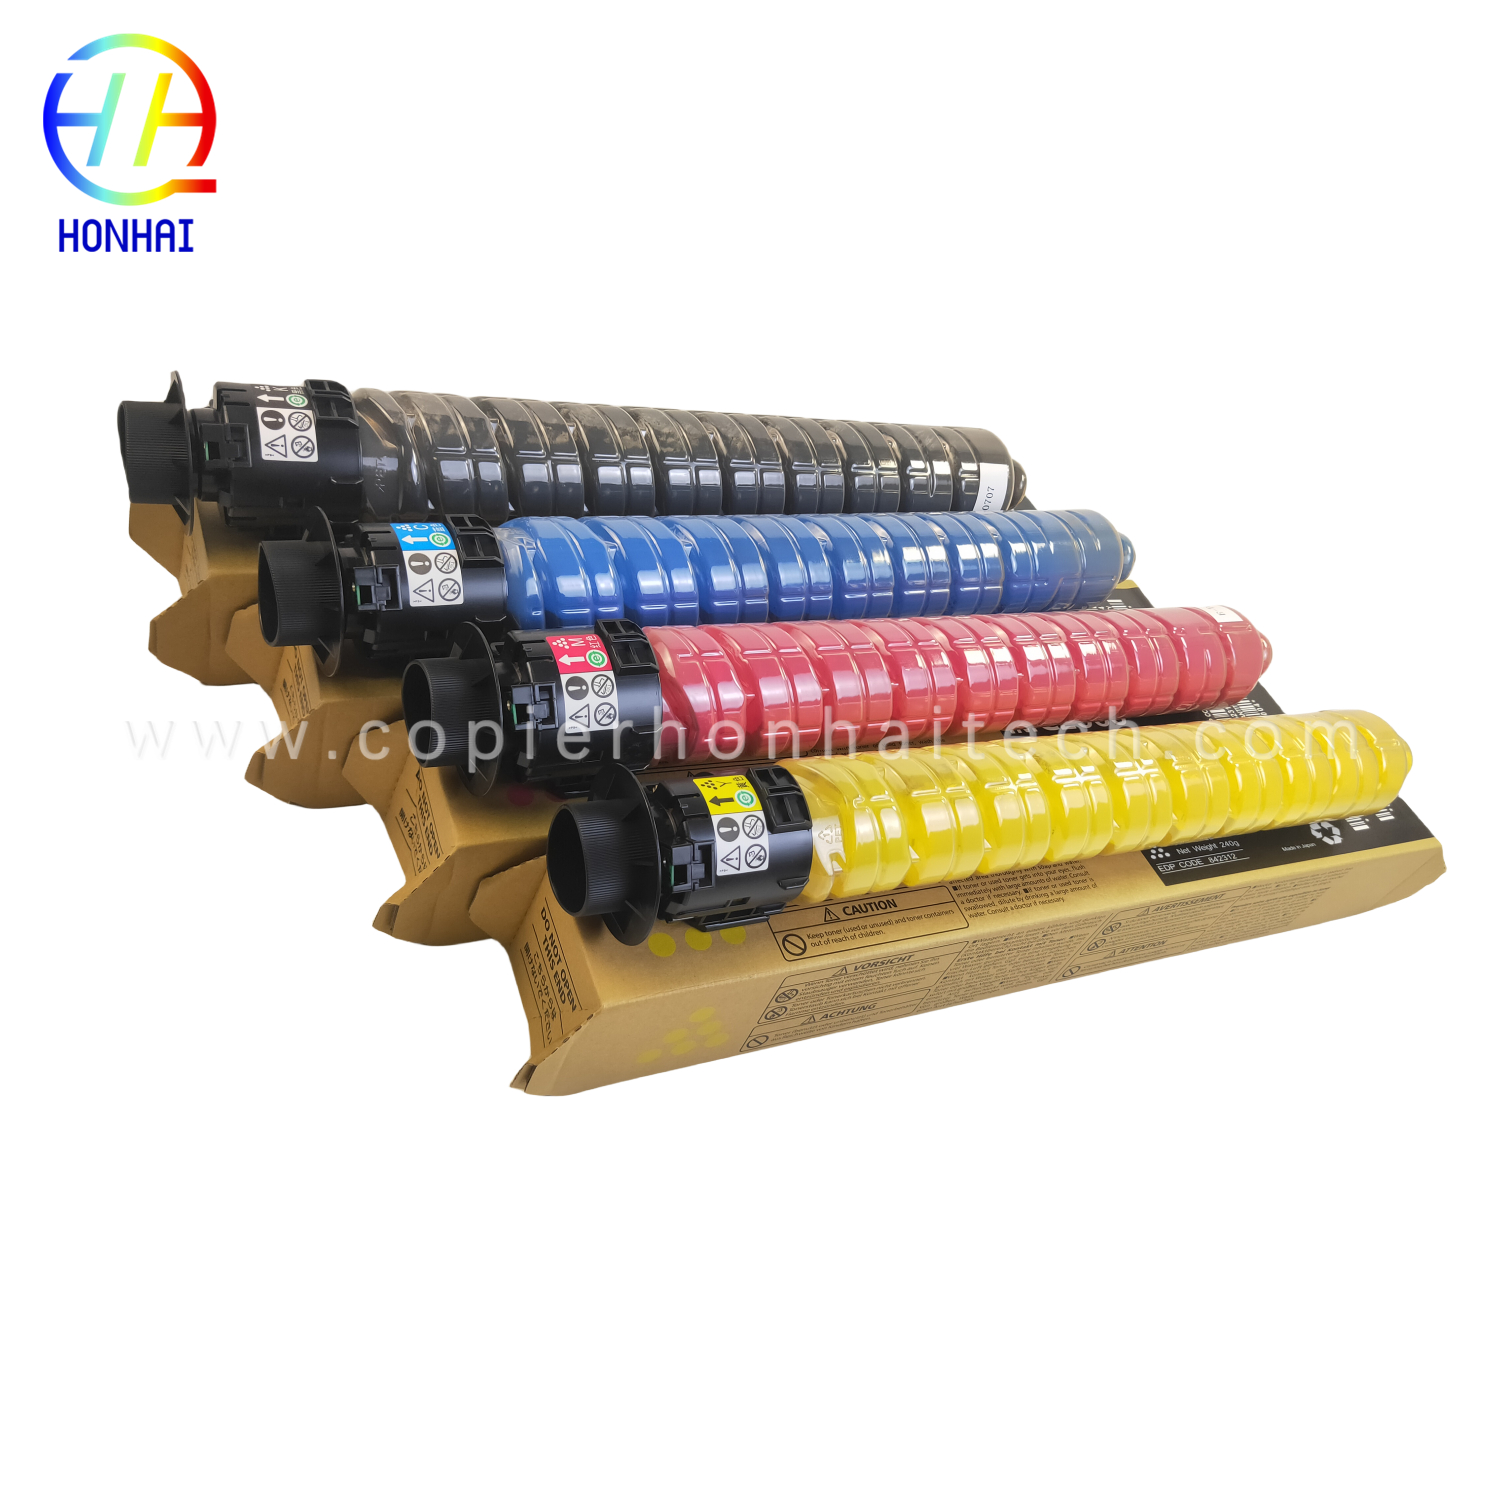 https://www.copierhonhaitech.com/copy-color -toner-cartridge